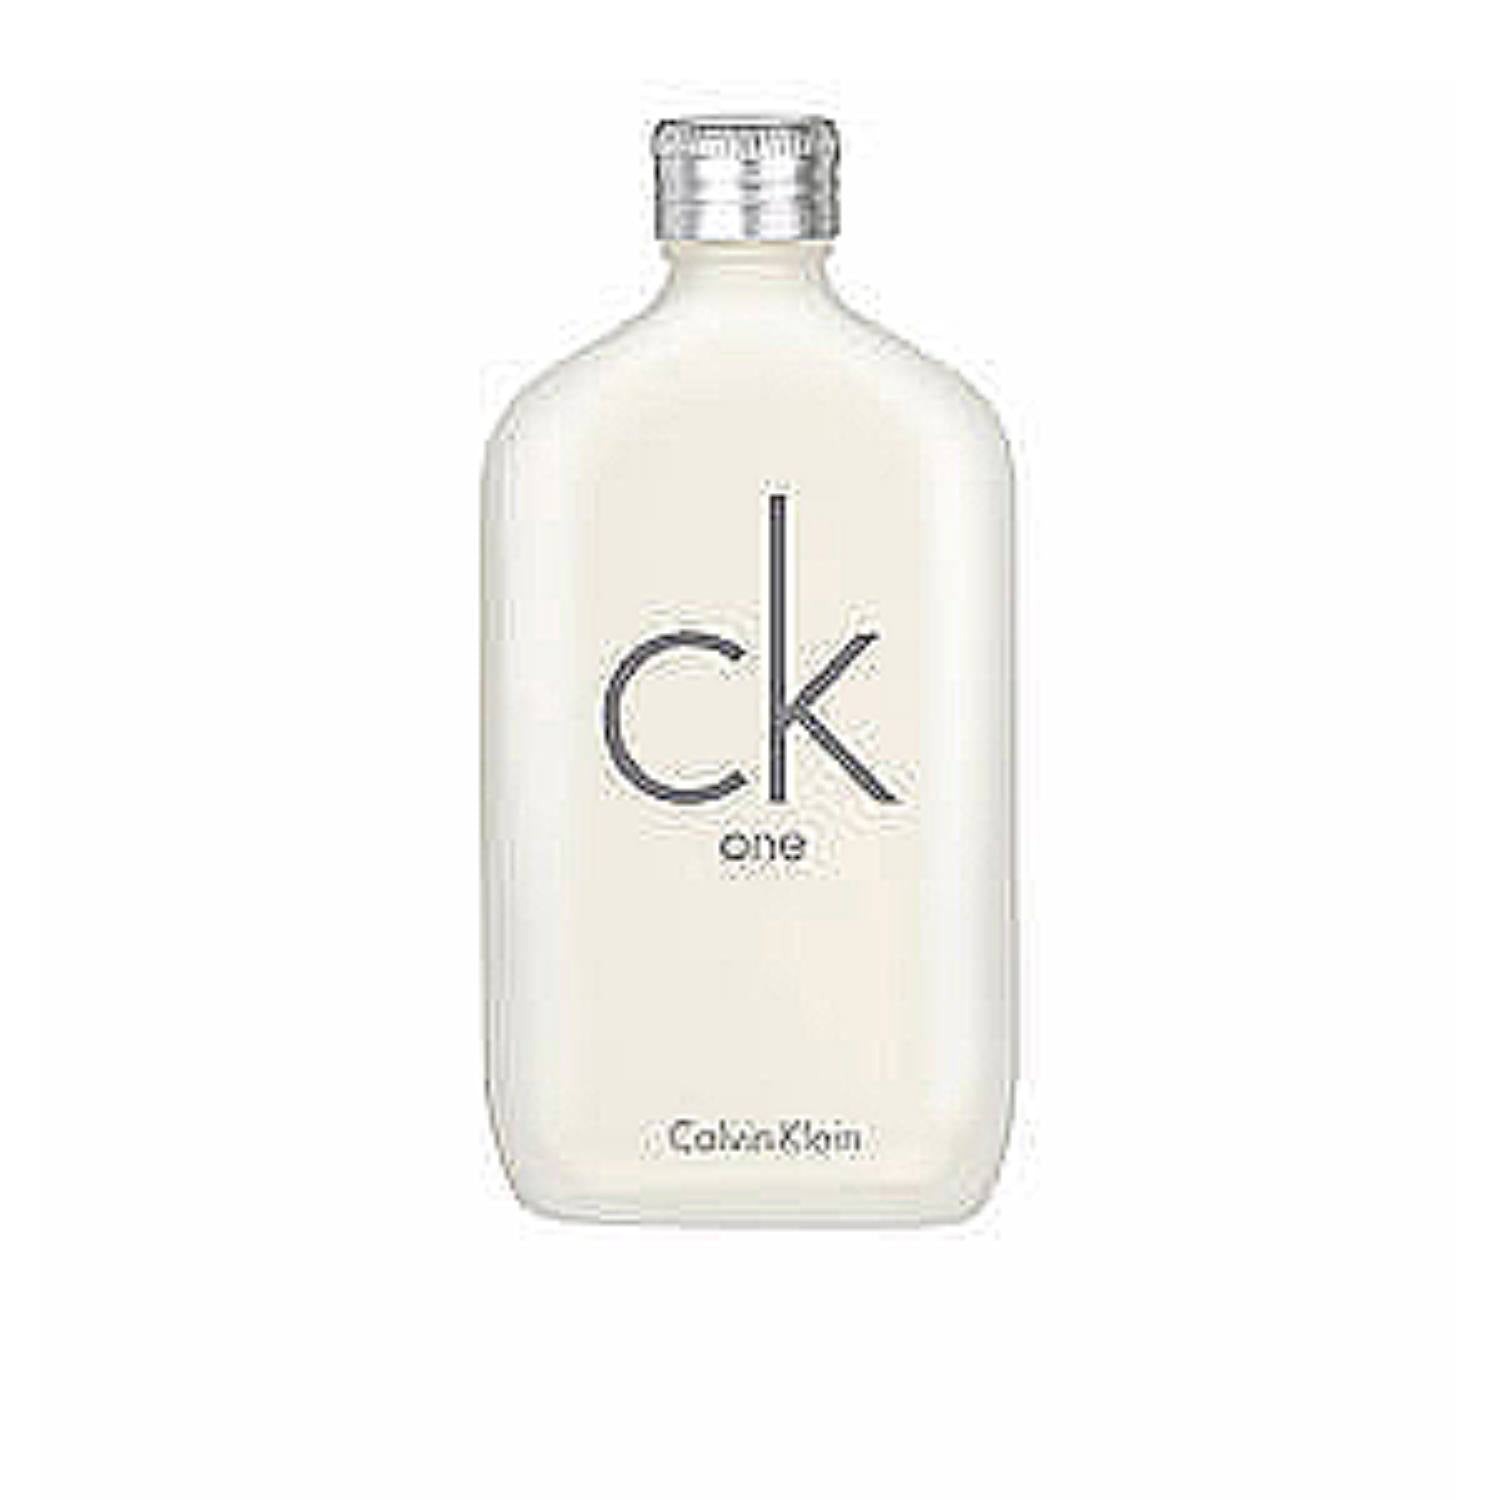 CALVIN KLEIN CK ONE eau de Toilette Spray